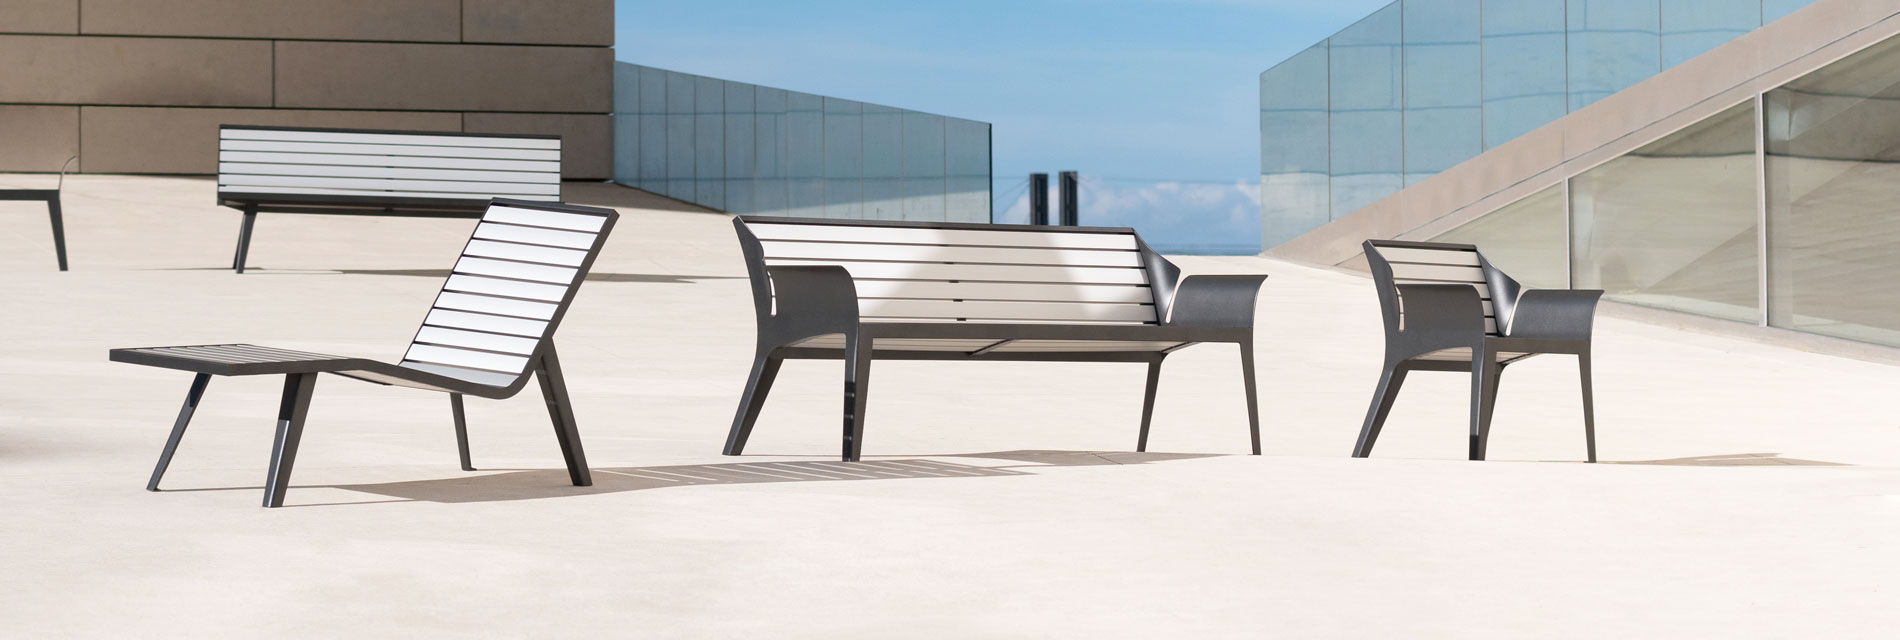 visuel de mobiliers urbains en aluminium, banc, chaise longue, canapé, bridge